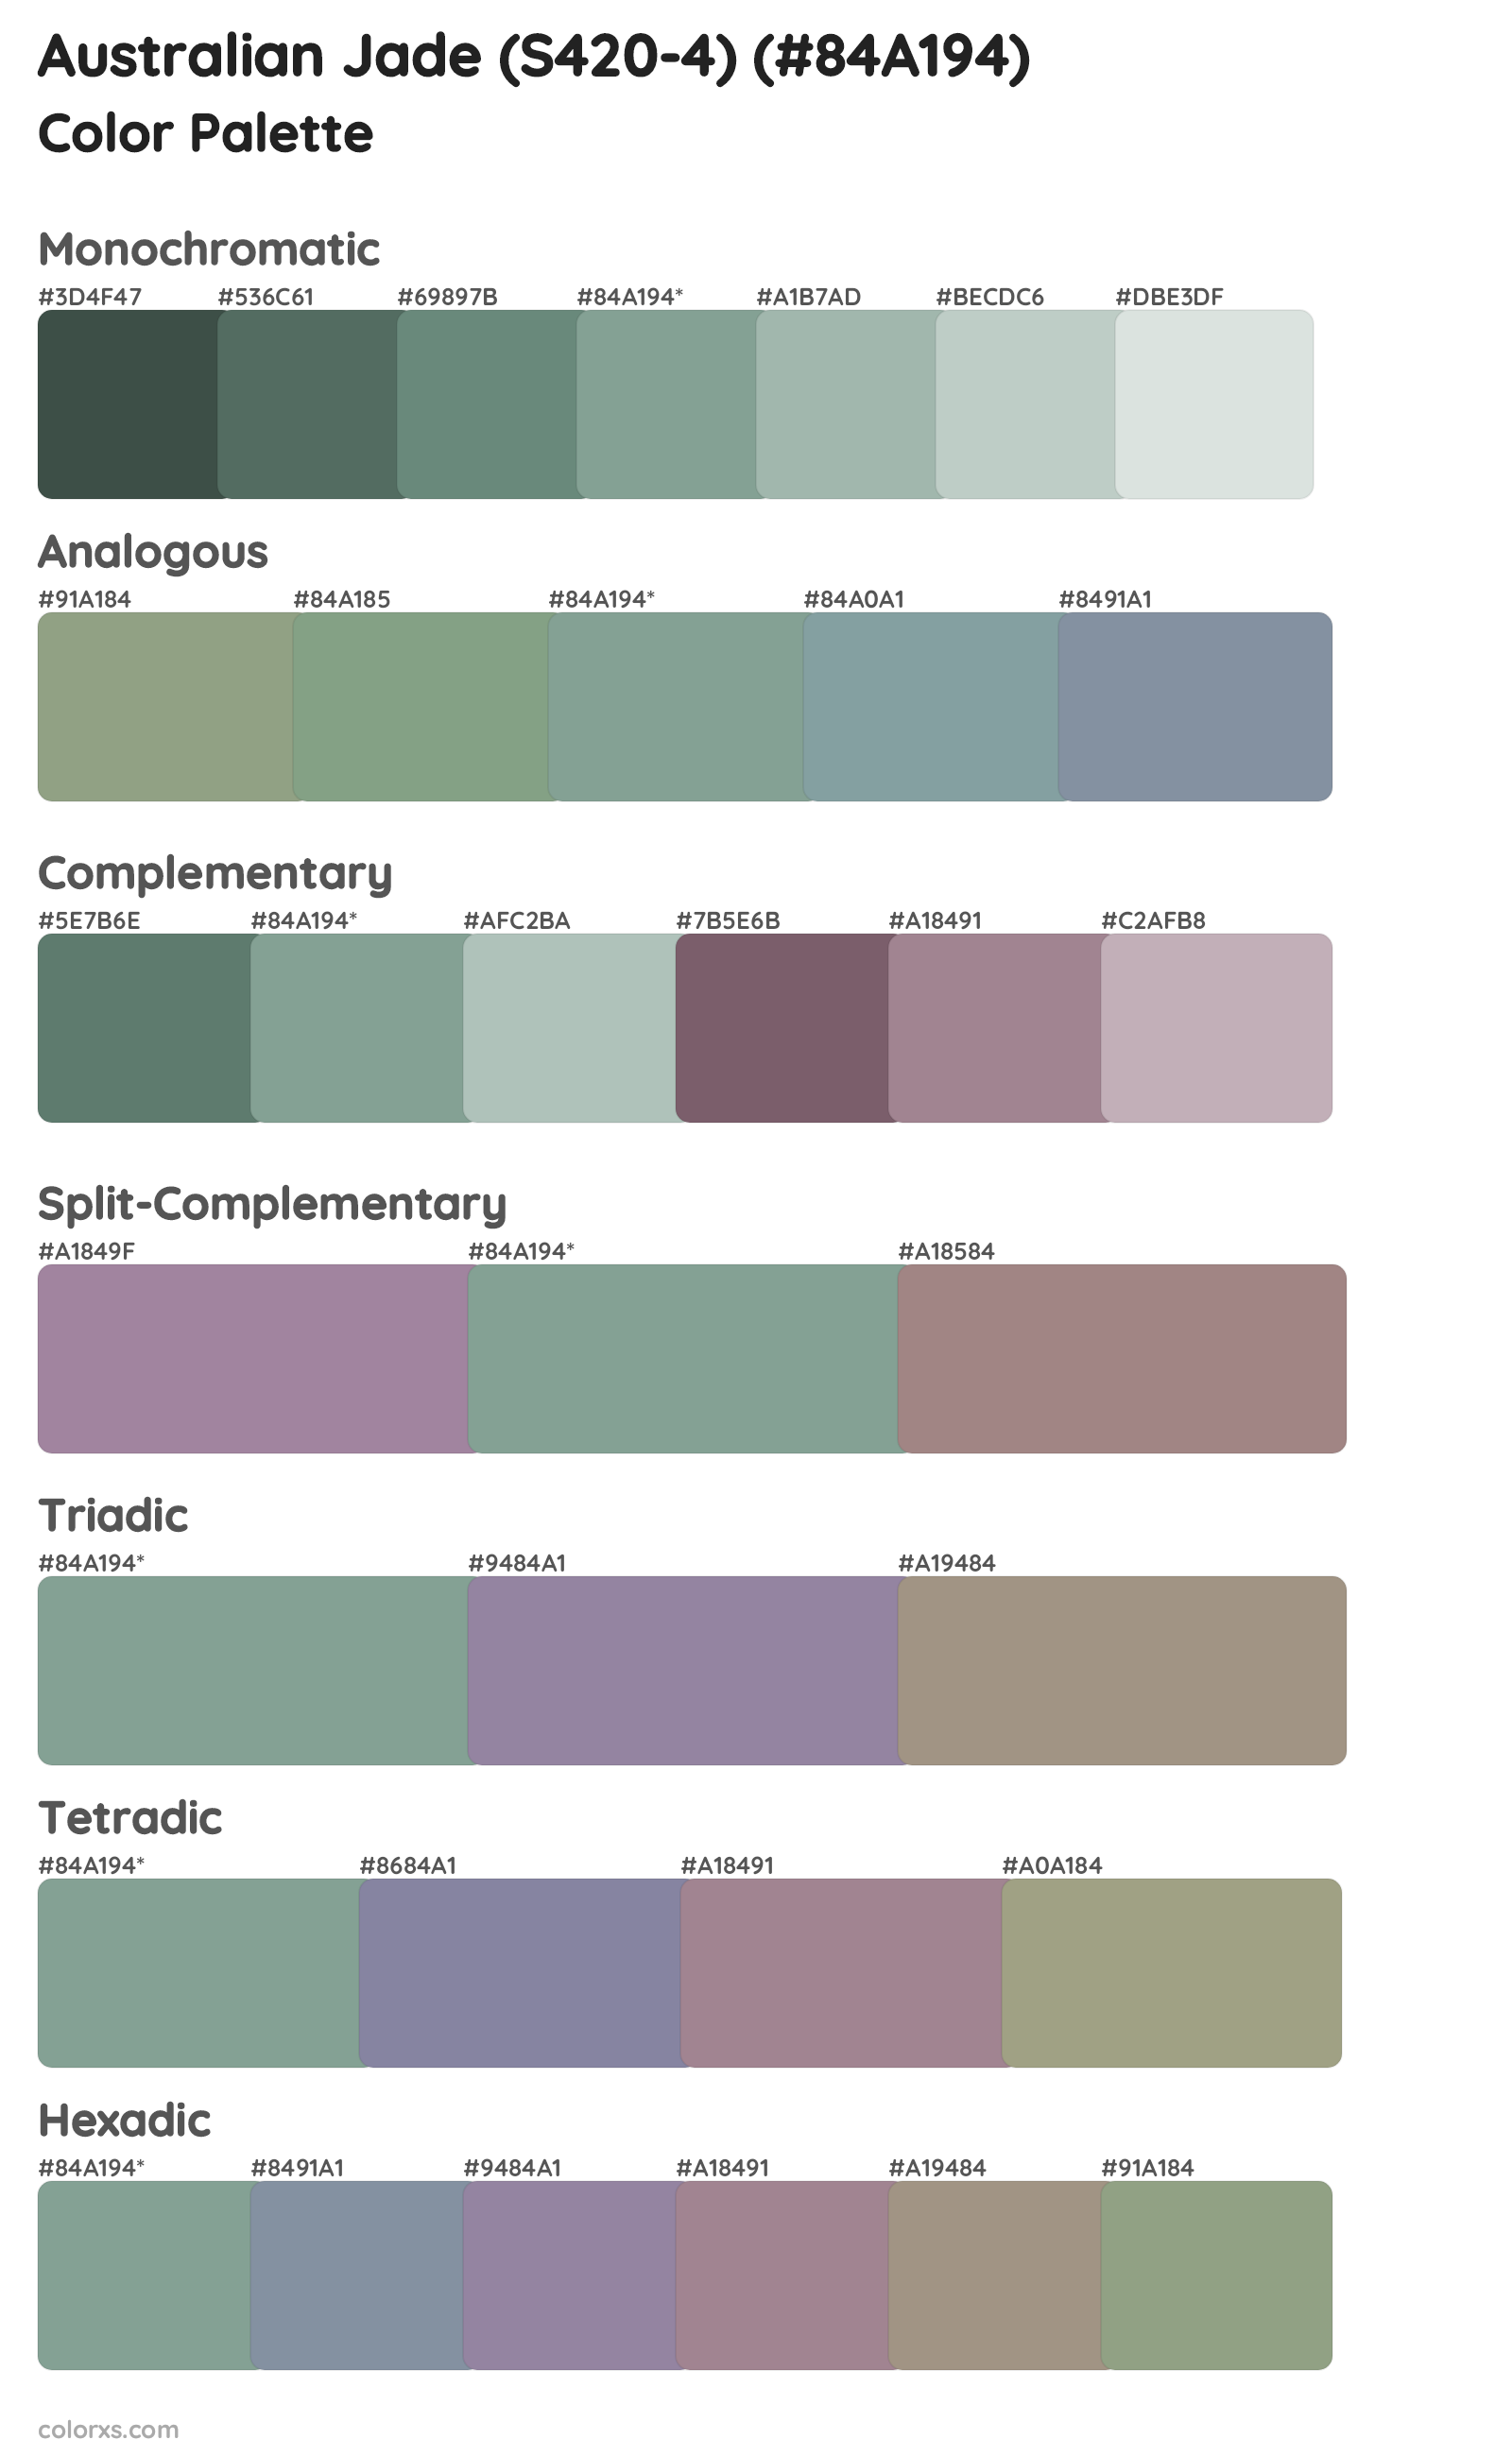 Australian Jade (S420-4) Color Scheme Palettes